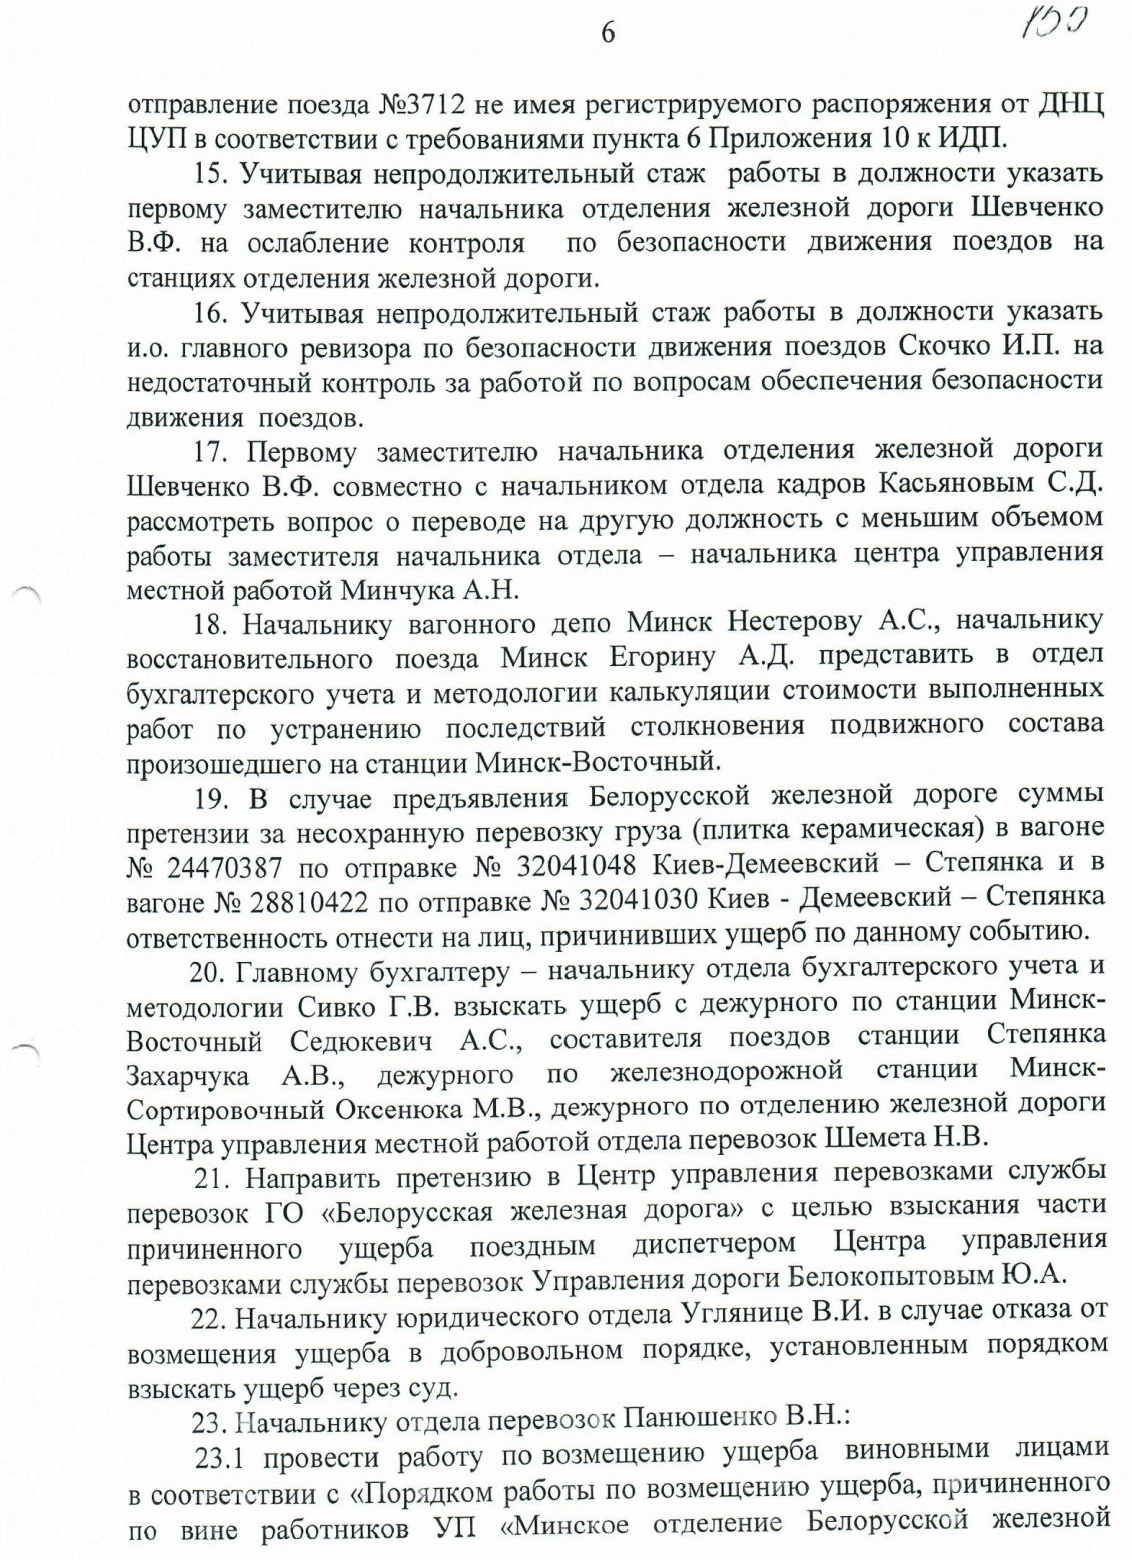 Протокол НОД-1 (Дашкевич) столкновение М-Вост (Страница 6)